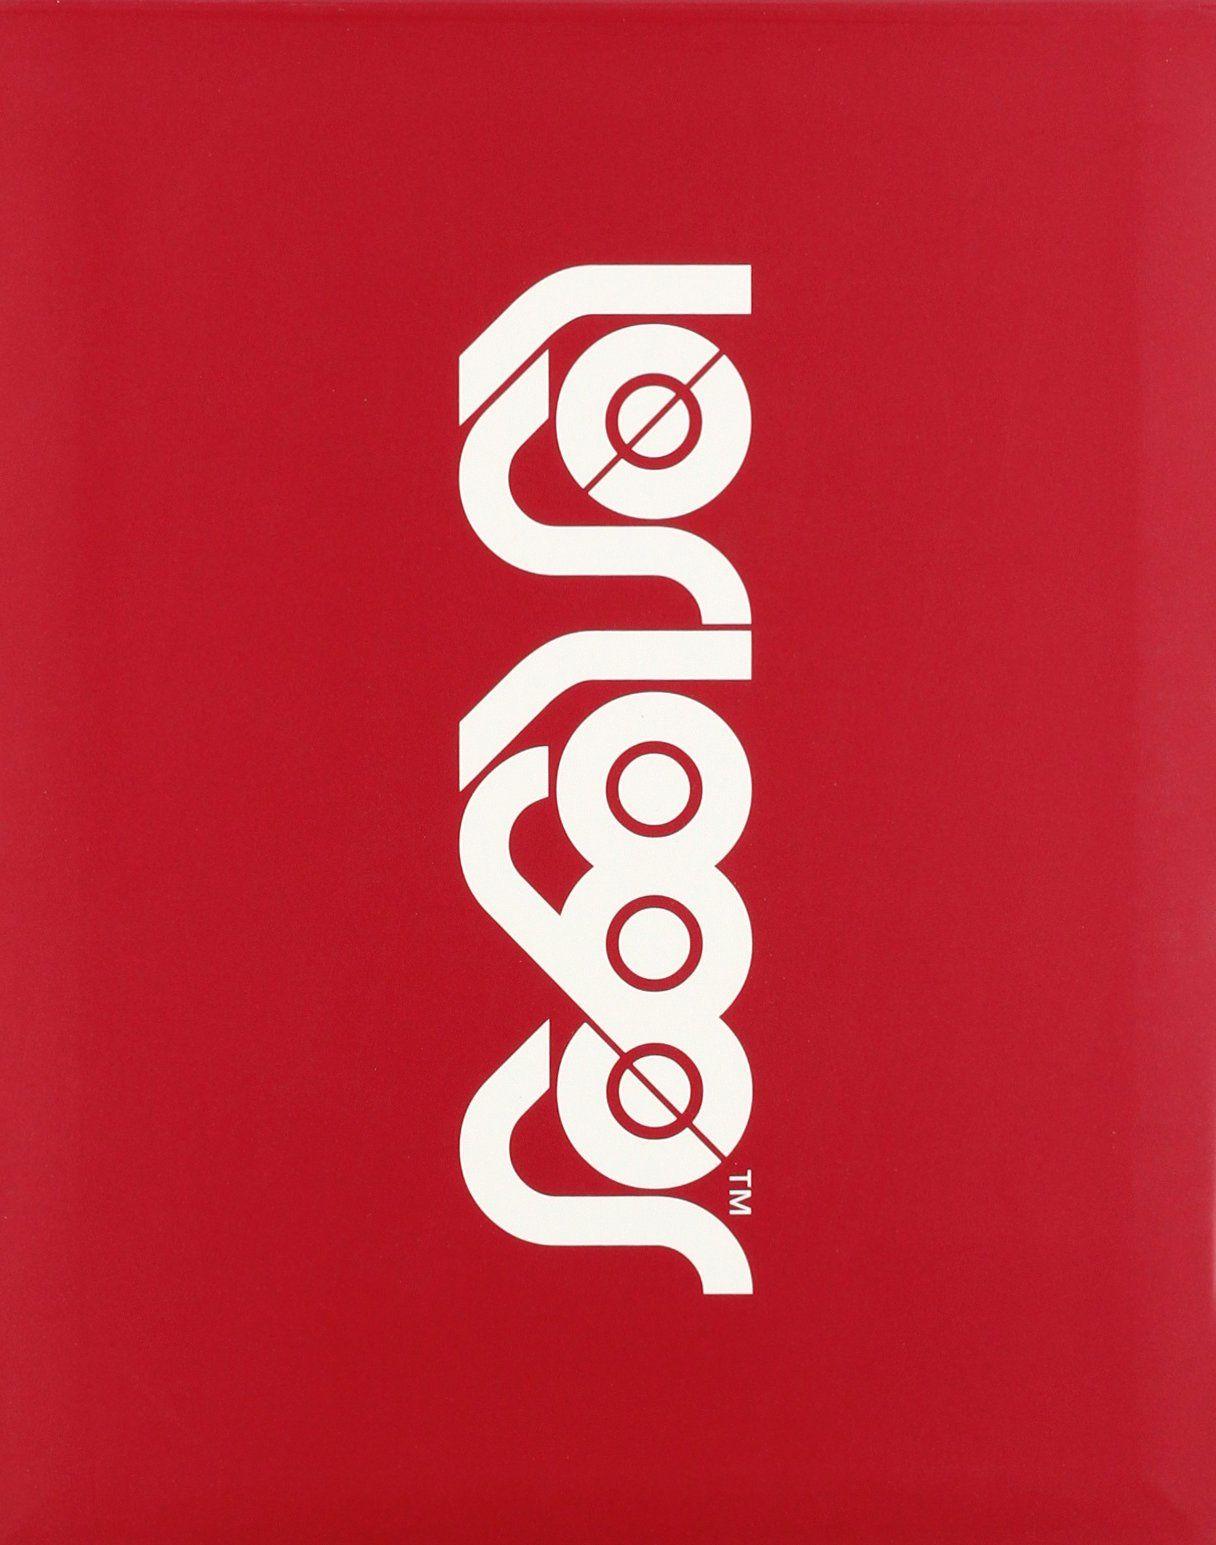 Los Logo - Los Logos (Logos Series): Amazon.co.uk: R. Klanten, M. Mischler, N